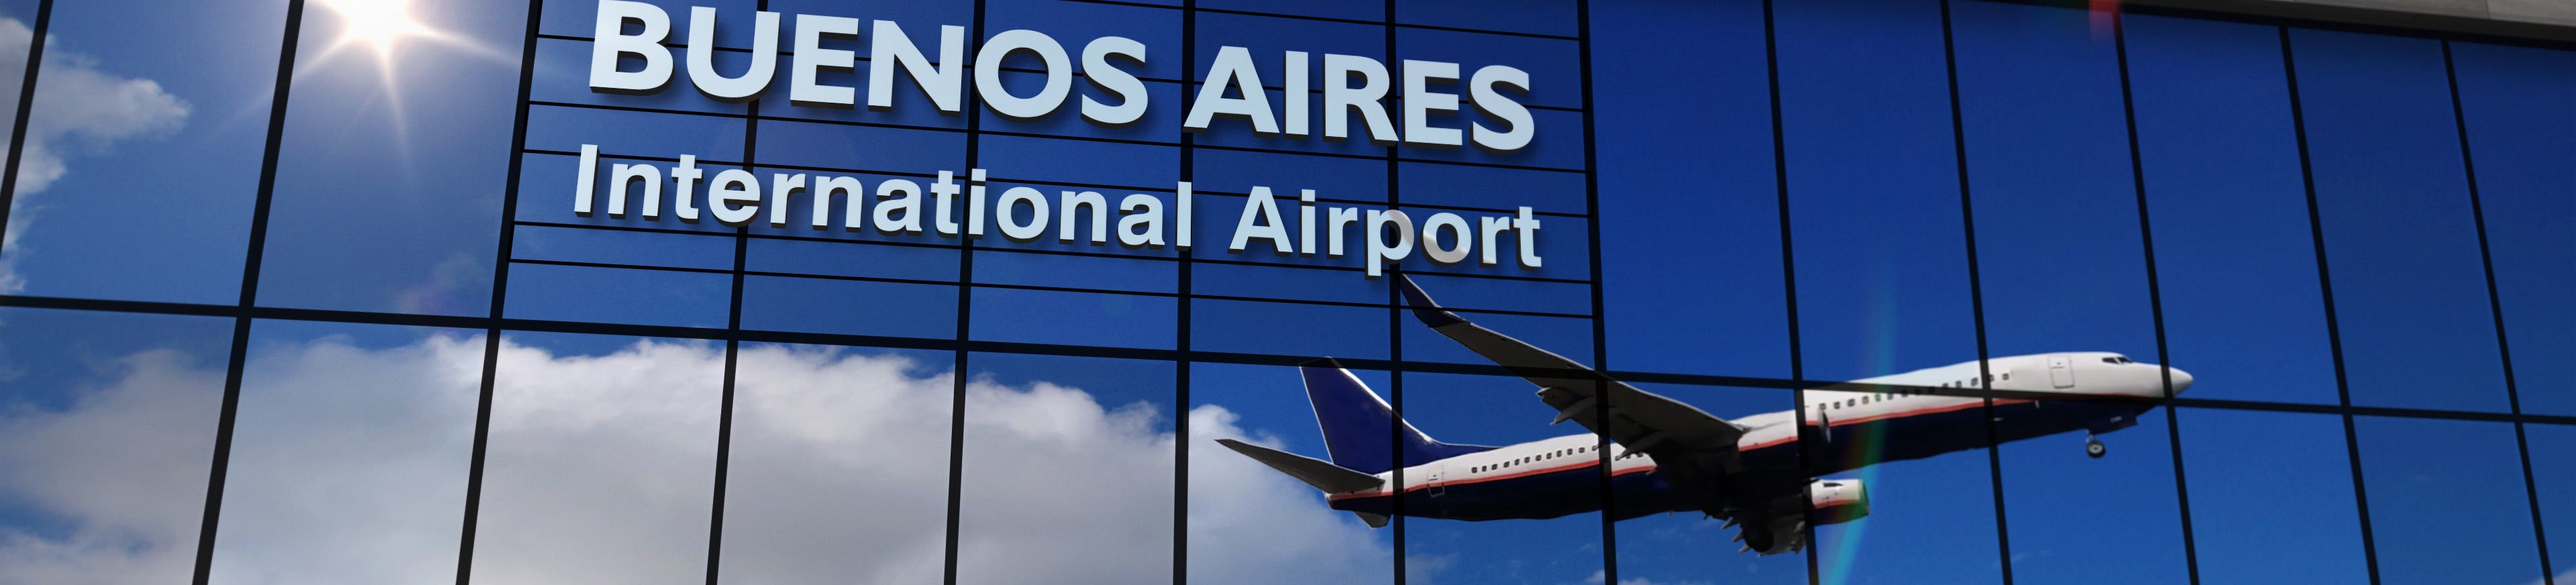 Conseils pratiques pour améliorer son expérience à l'aéroport en Argentine